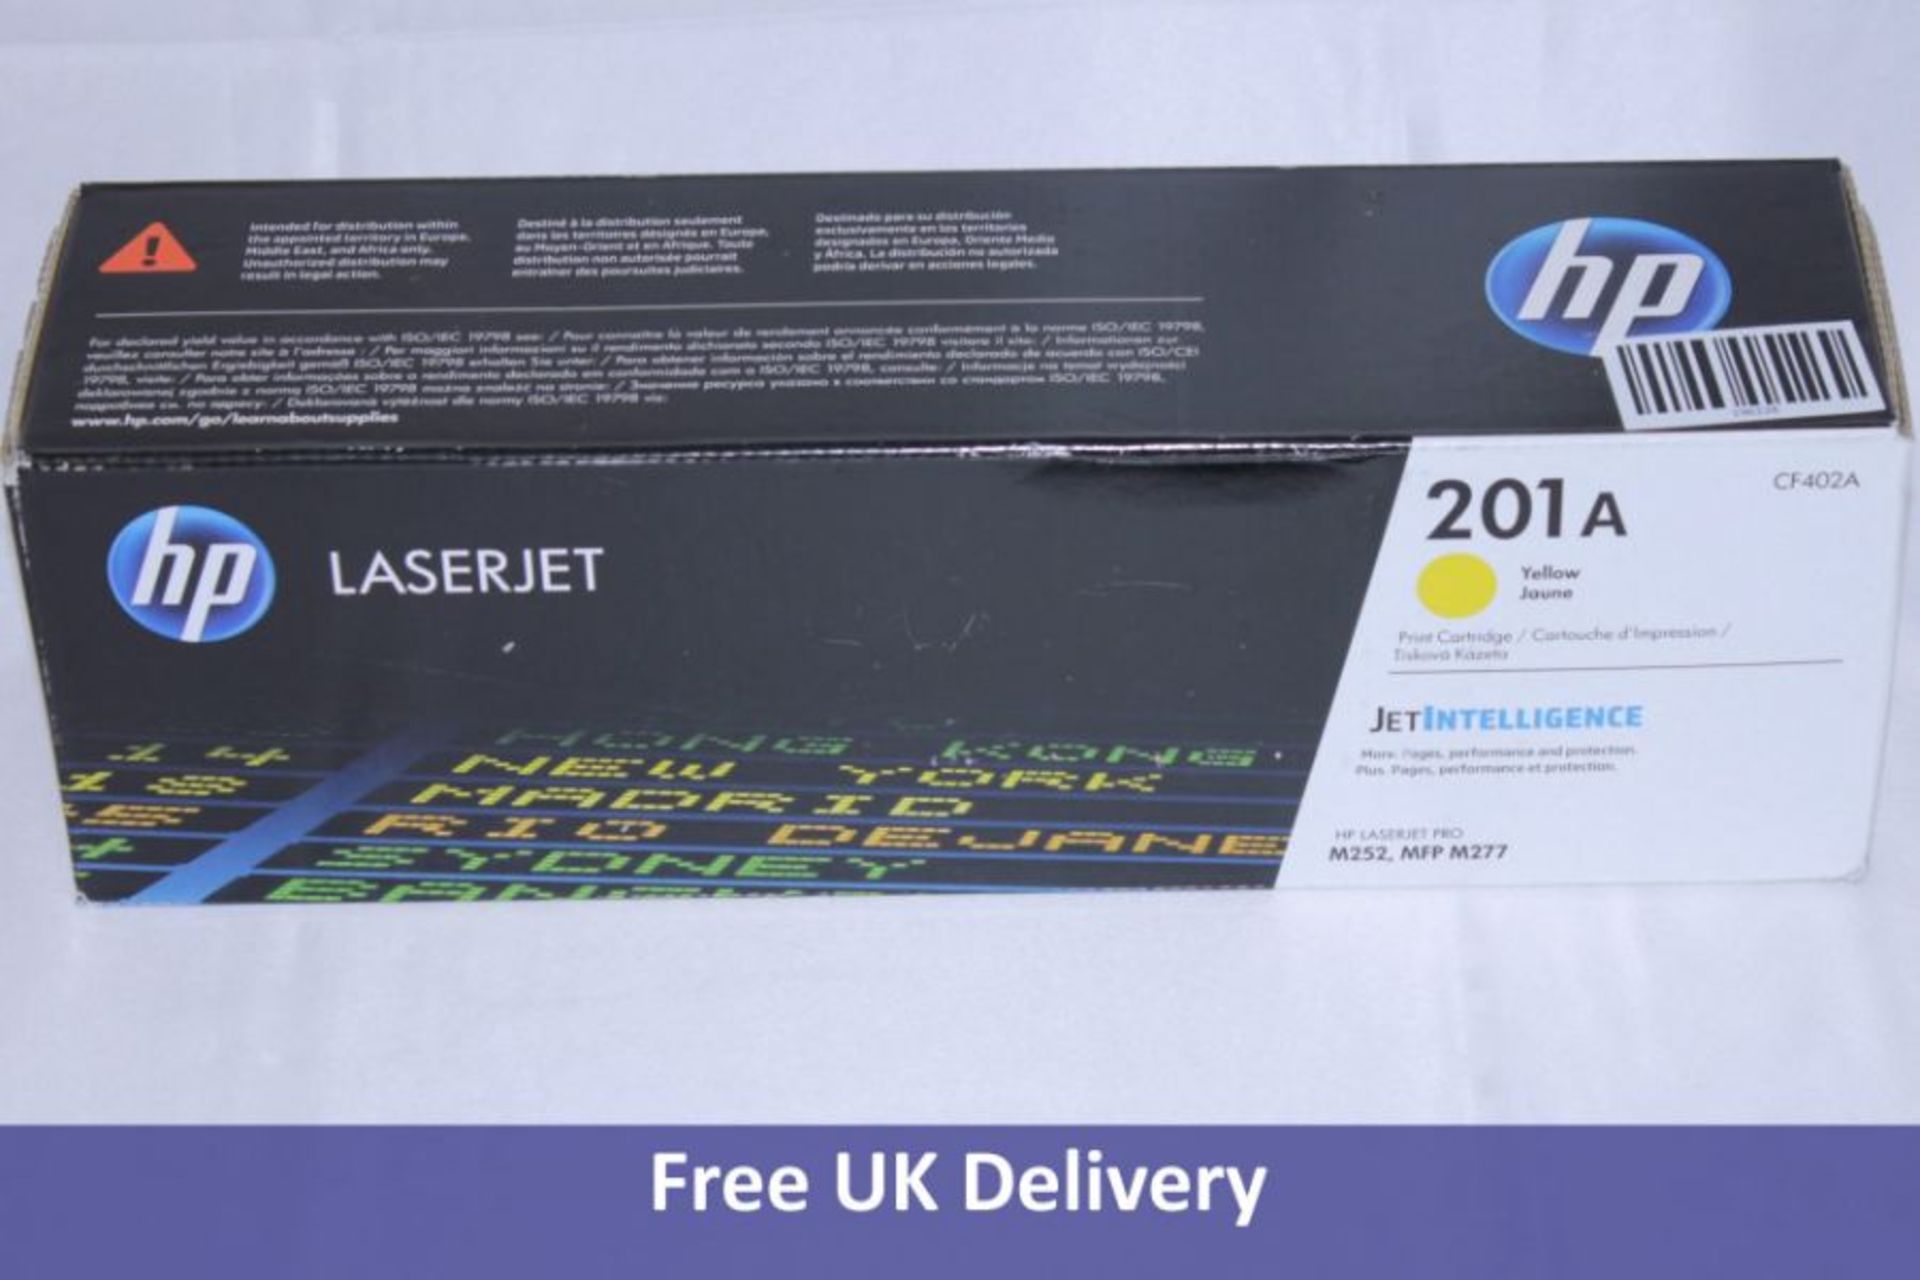 Two HP 201 A Laserjet Yellow Print Cartridge